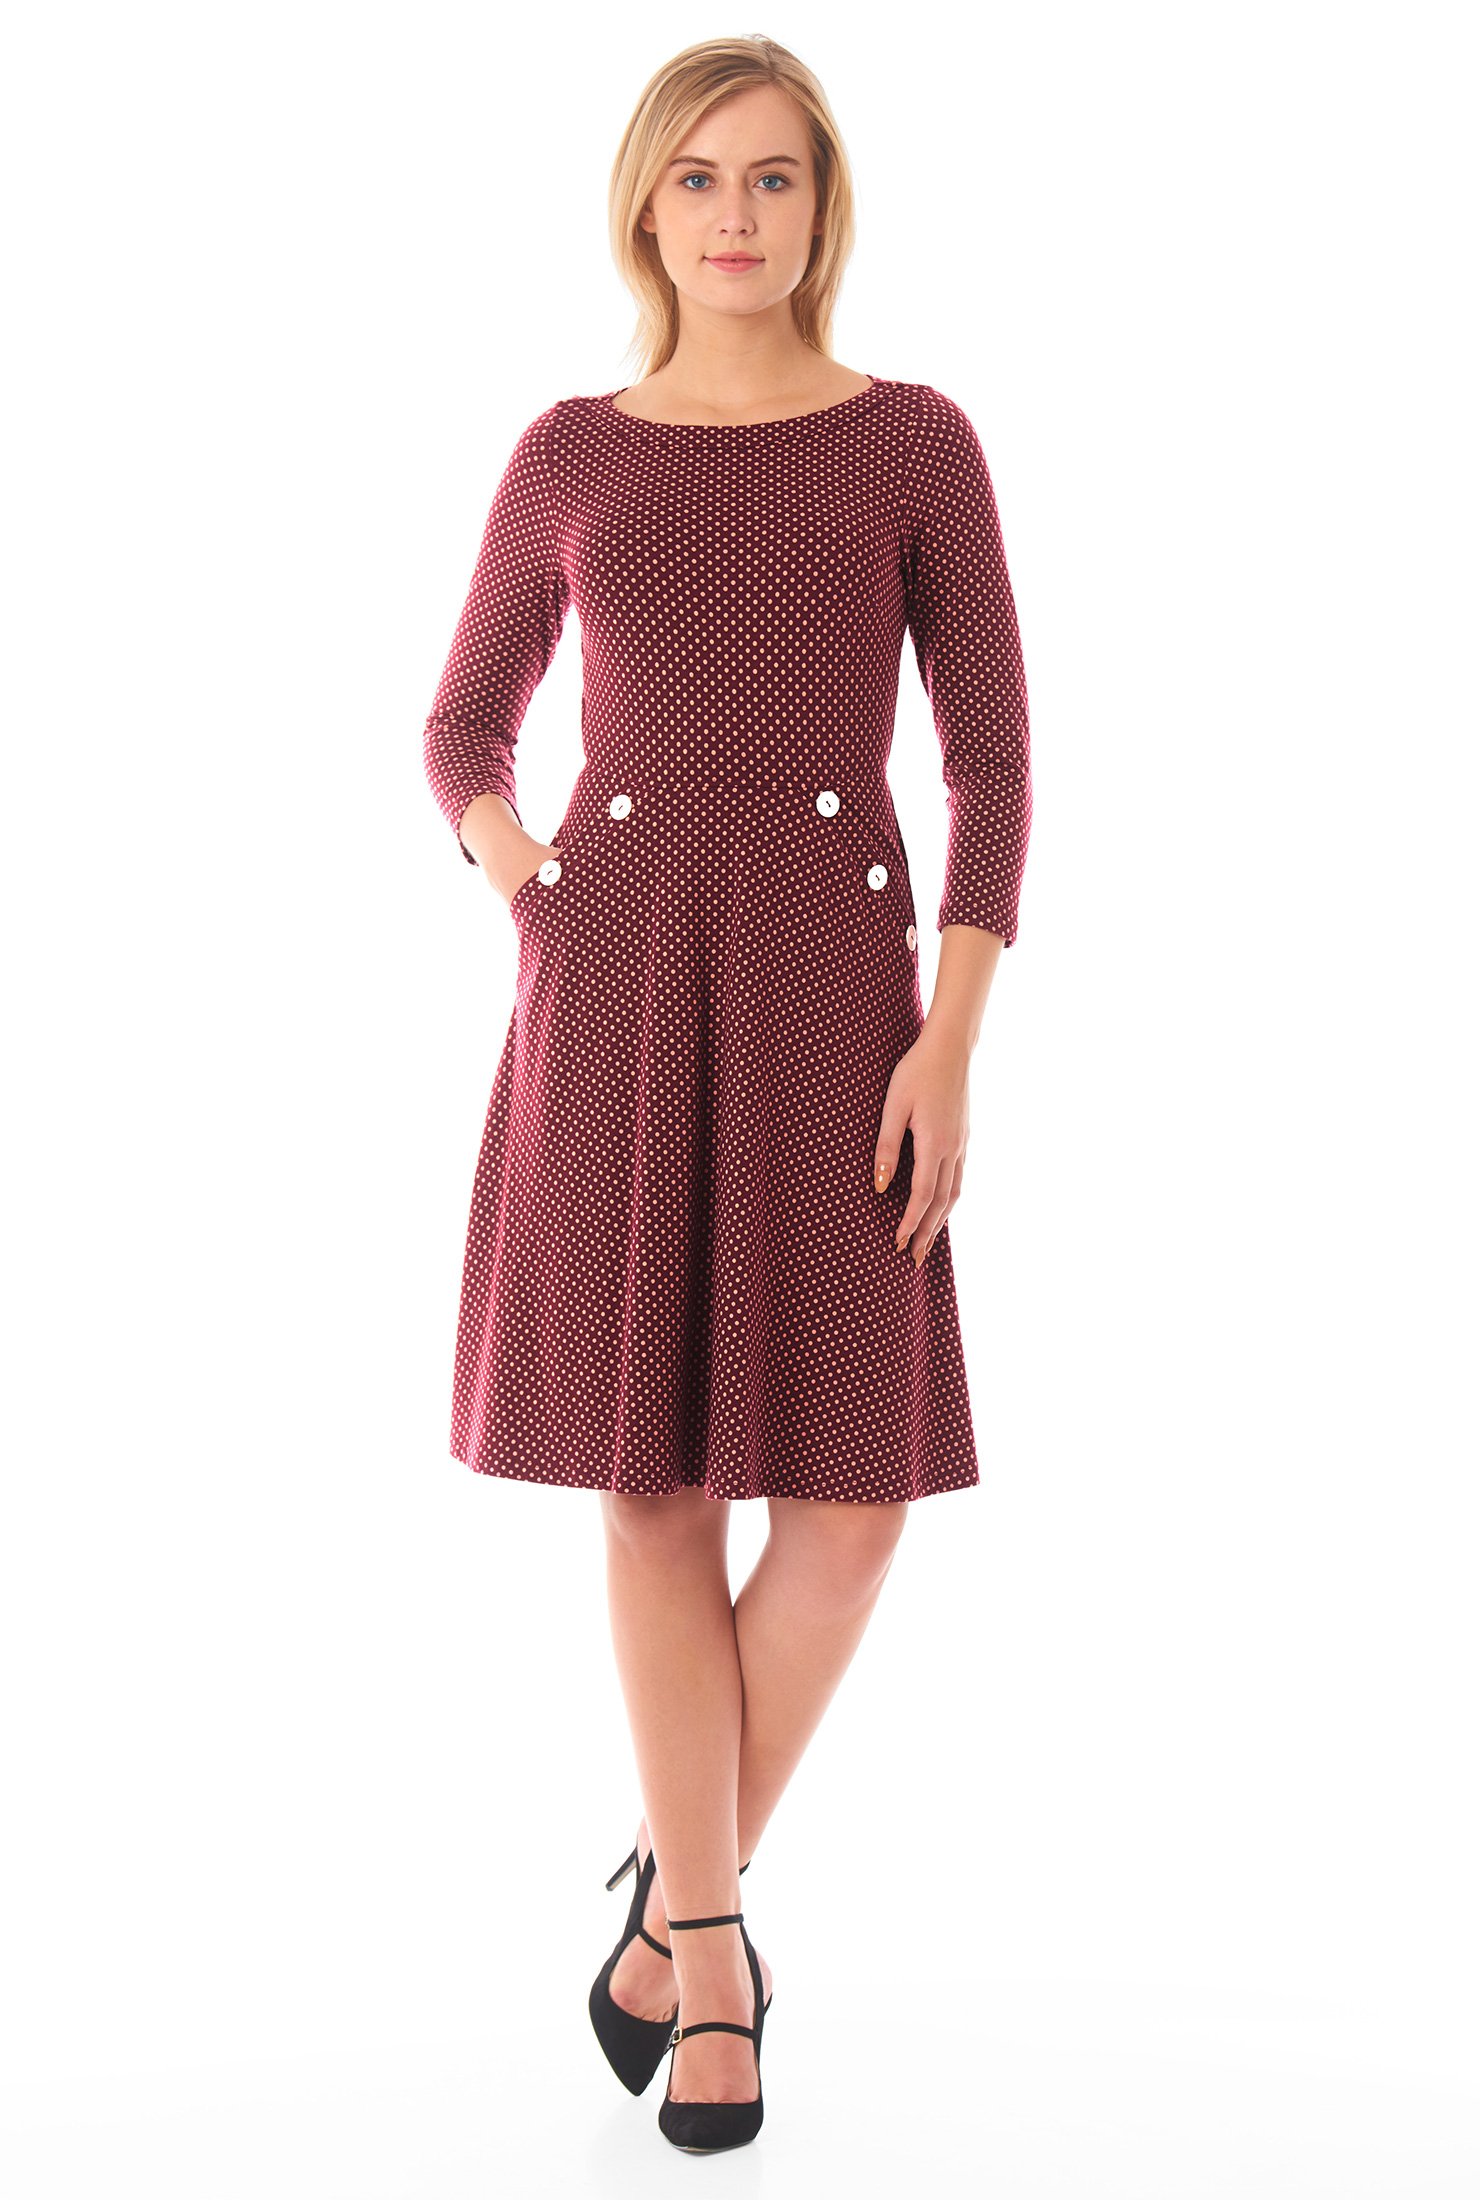 Shop Dot print large button cotton knit dress | eShakti